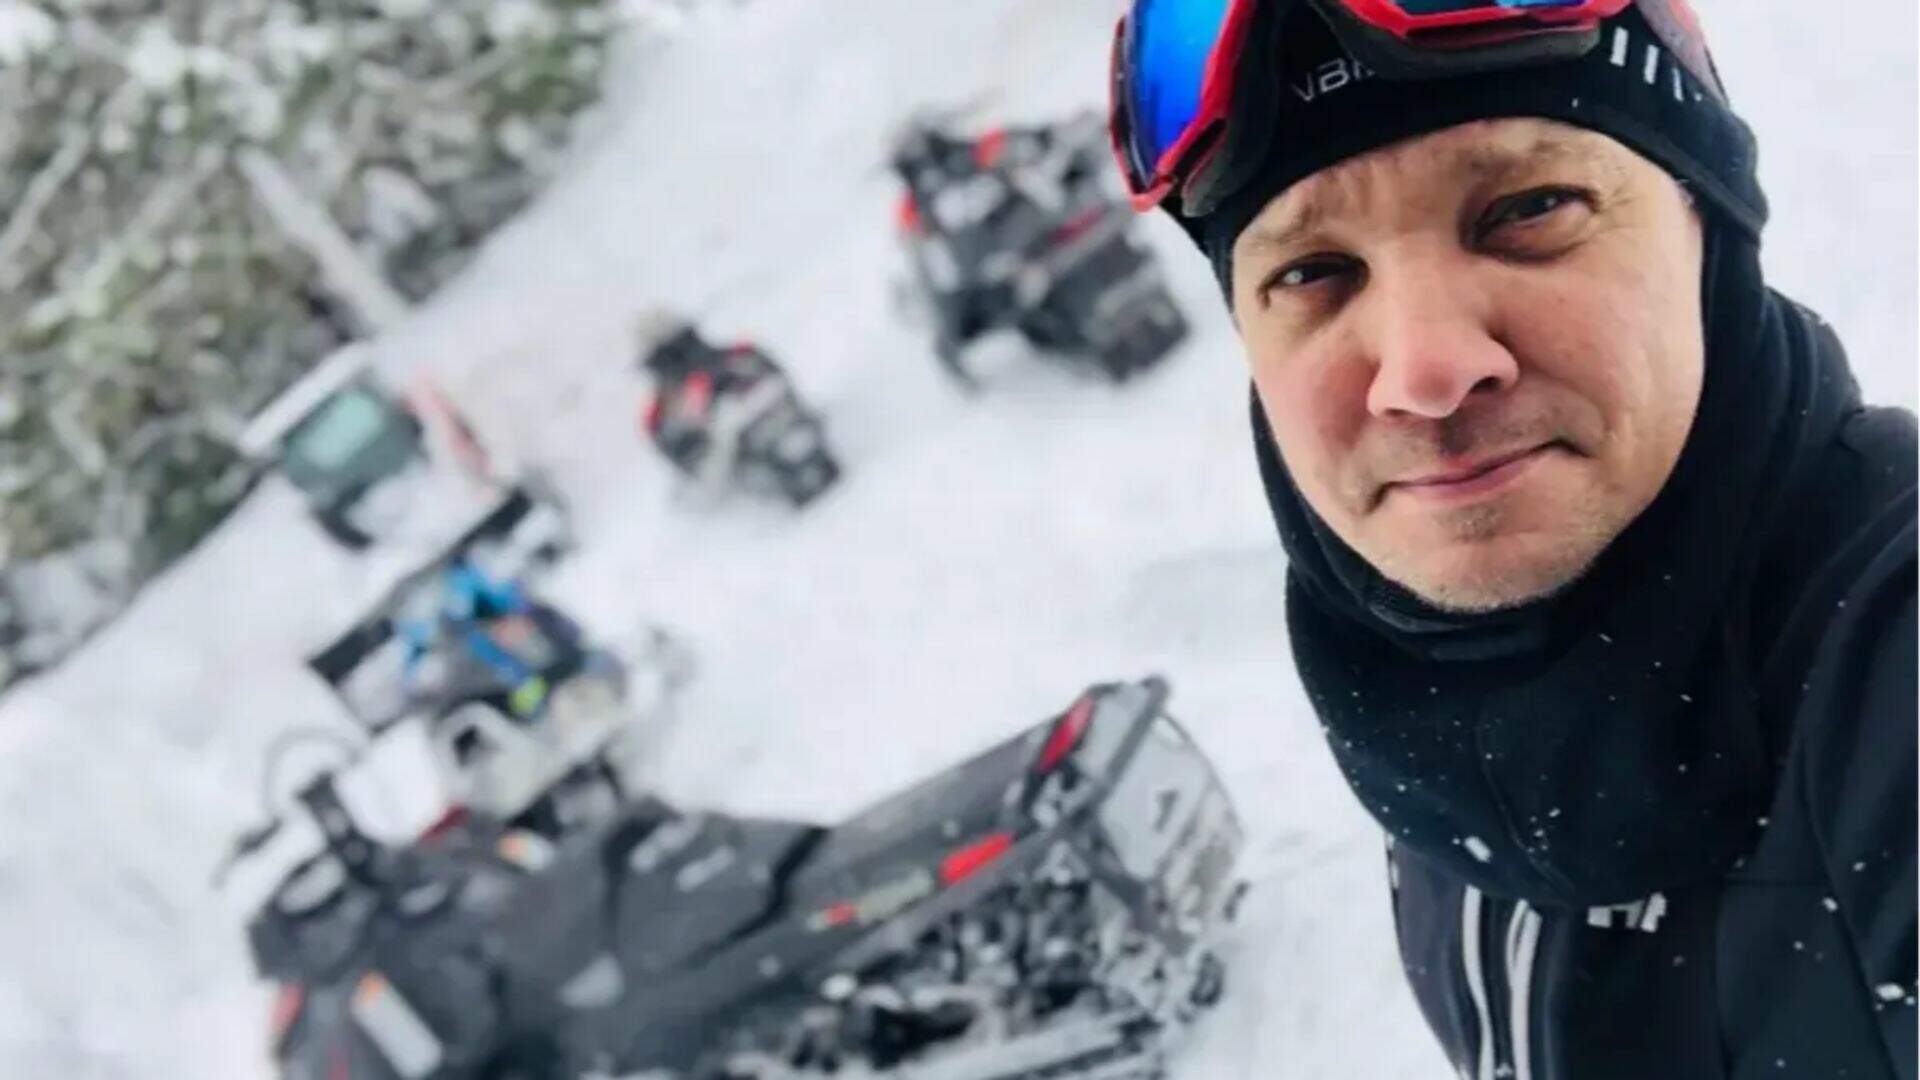 Boletim médico revela situação assustadora de Jeremy Renner após acidente com Snowcat